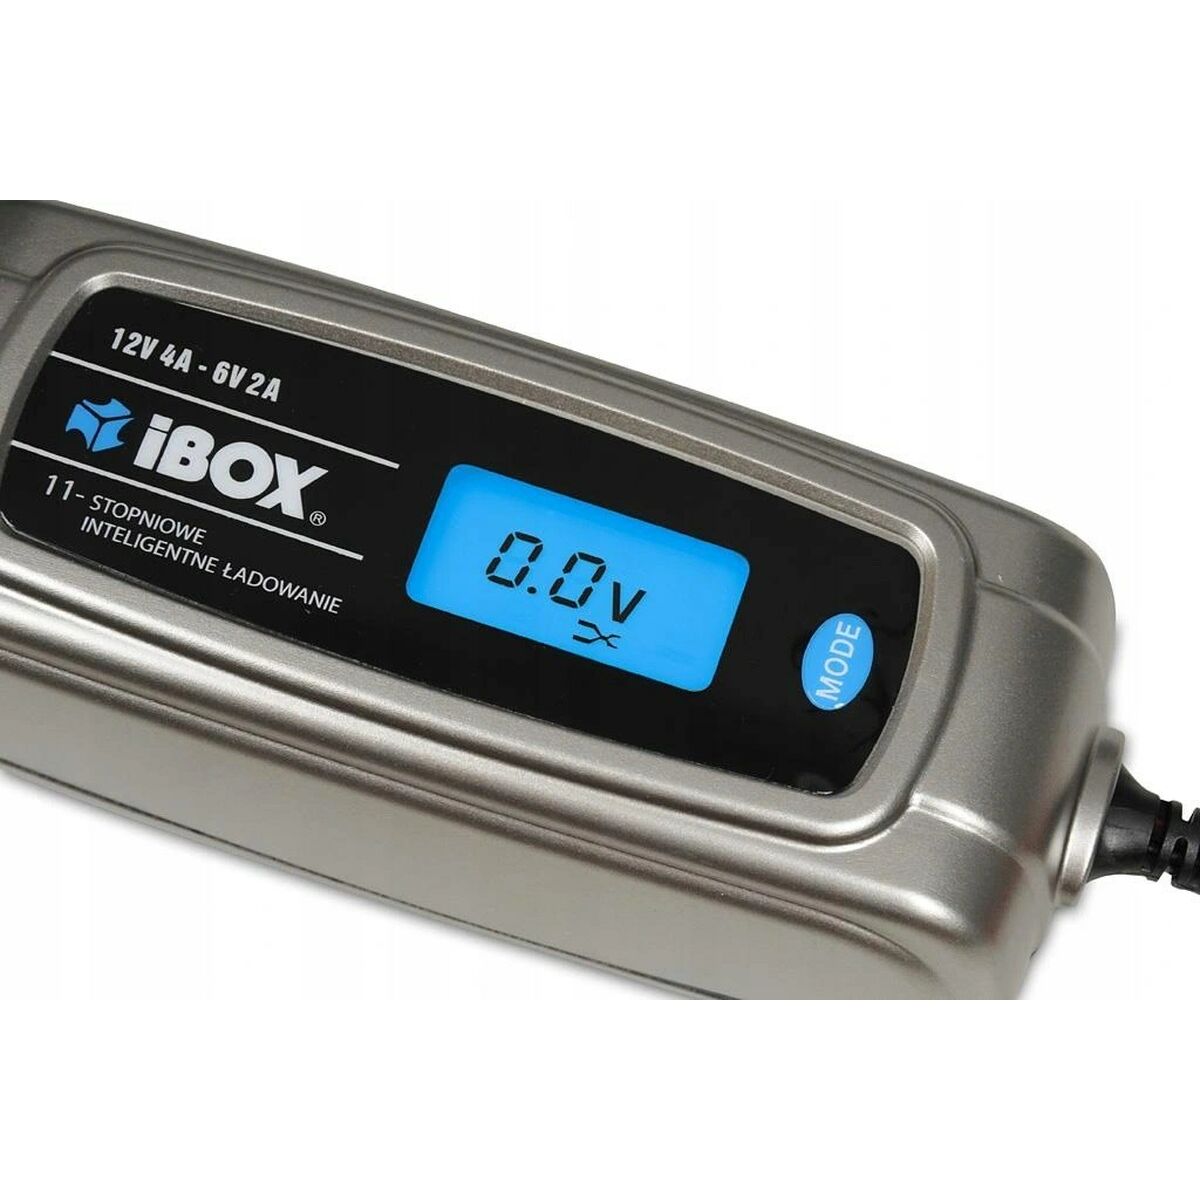 Зарядное устройство Ibox I-504DVL